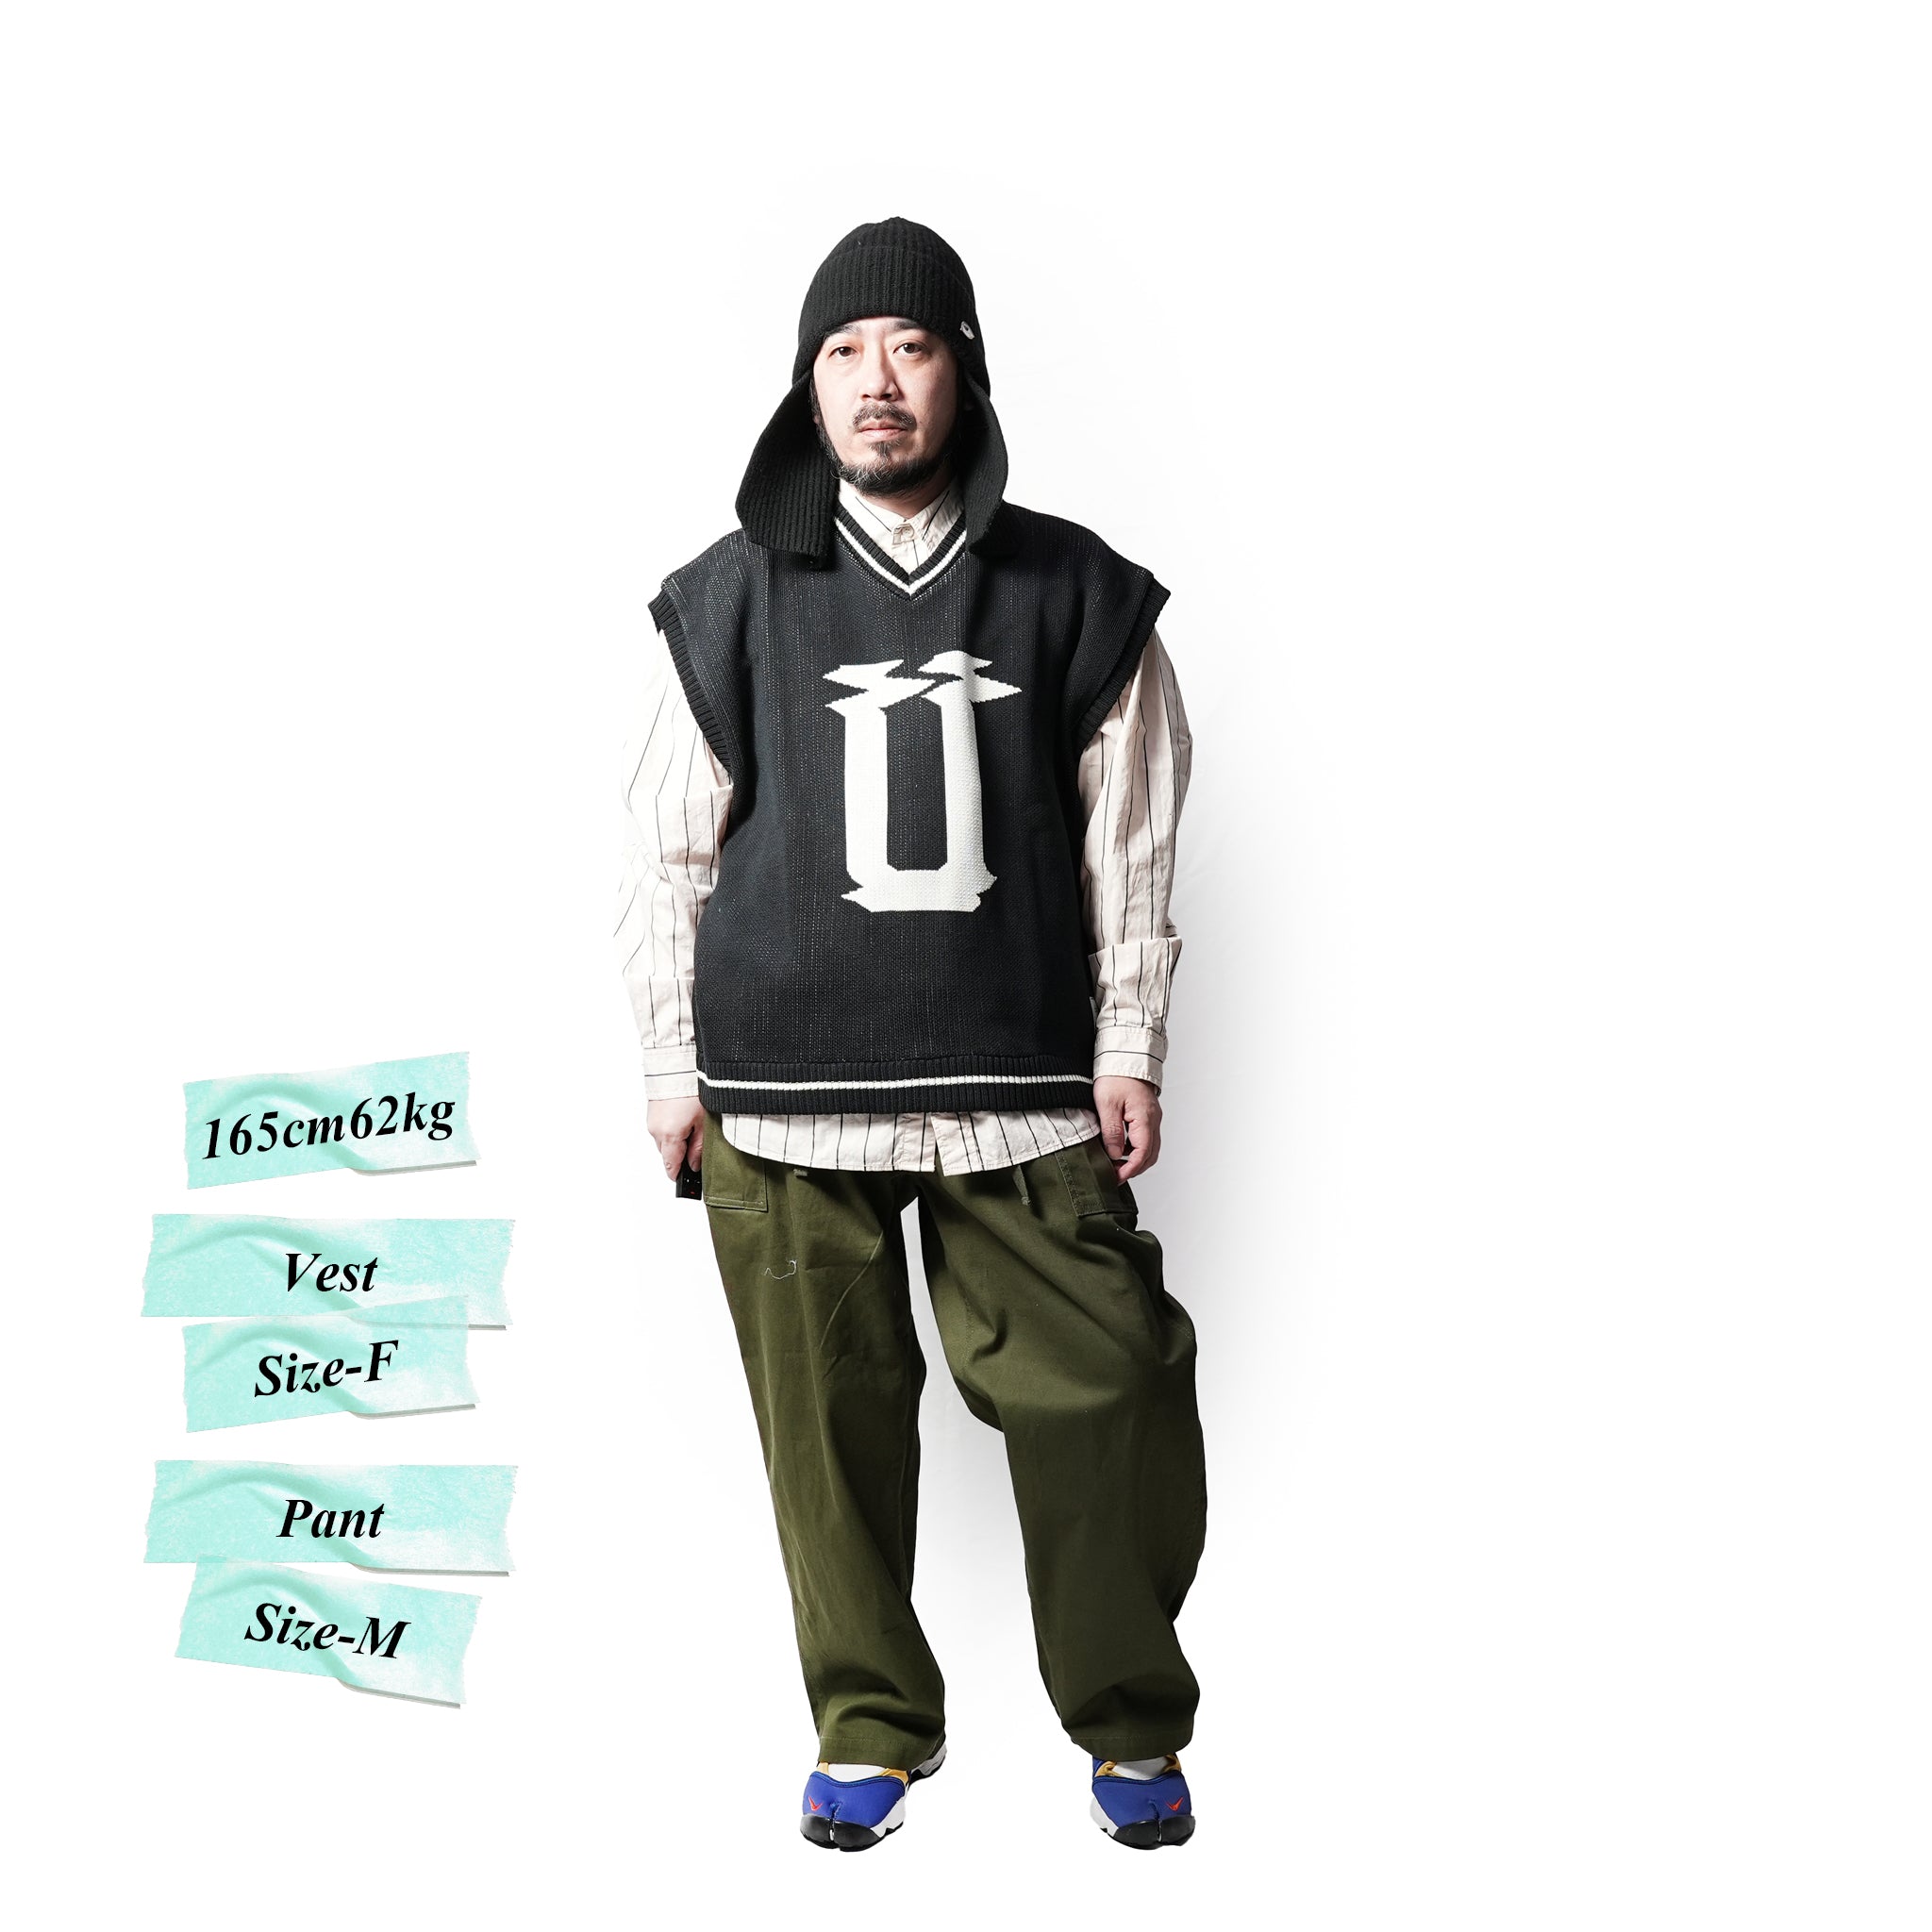 No:efcp-11 | Name:l u logo knit vest| Color:Off White/Ultra Marin/Black | Size:Free【EFFECTEN_エフェクテン】